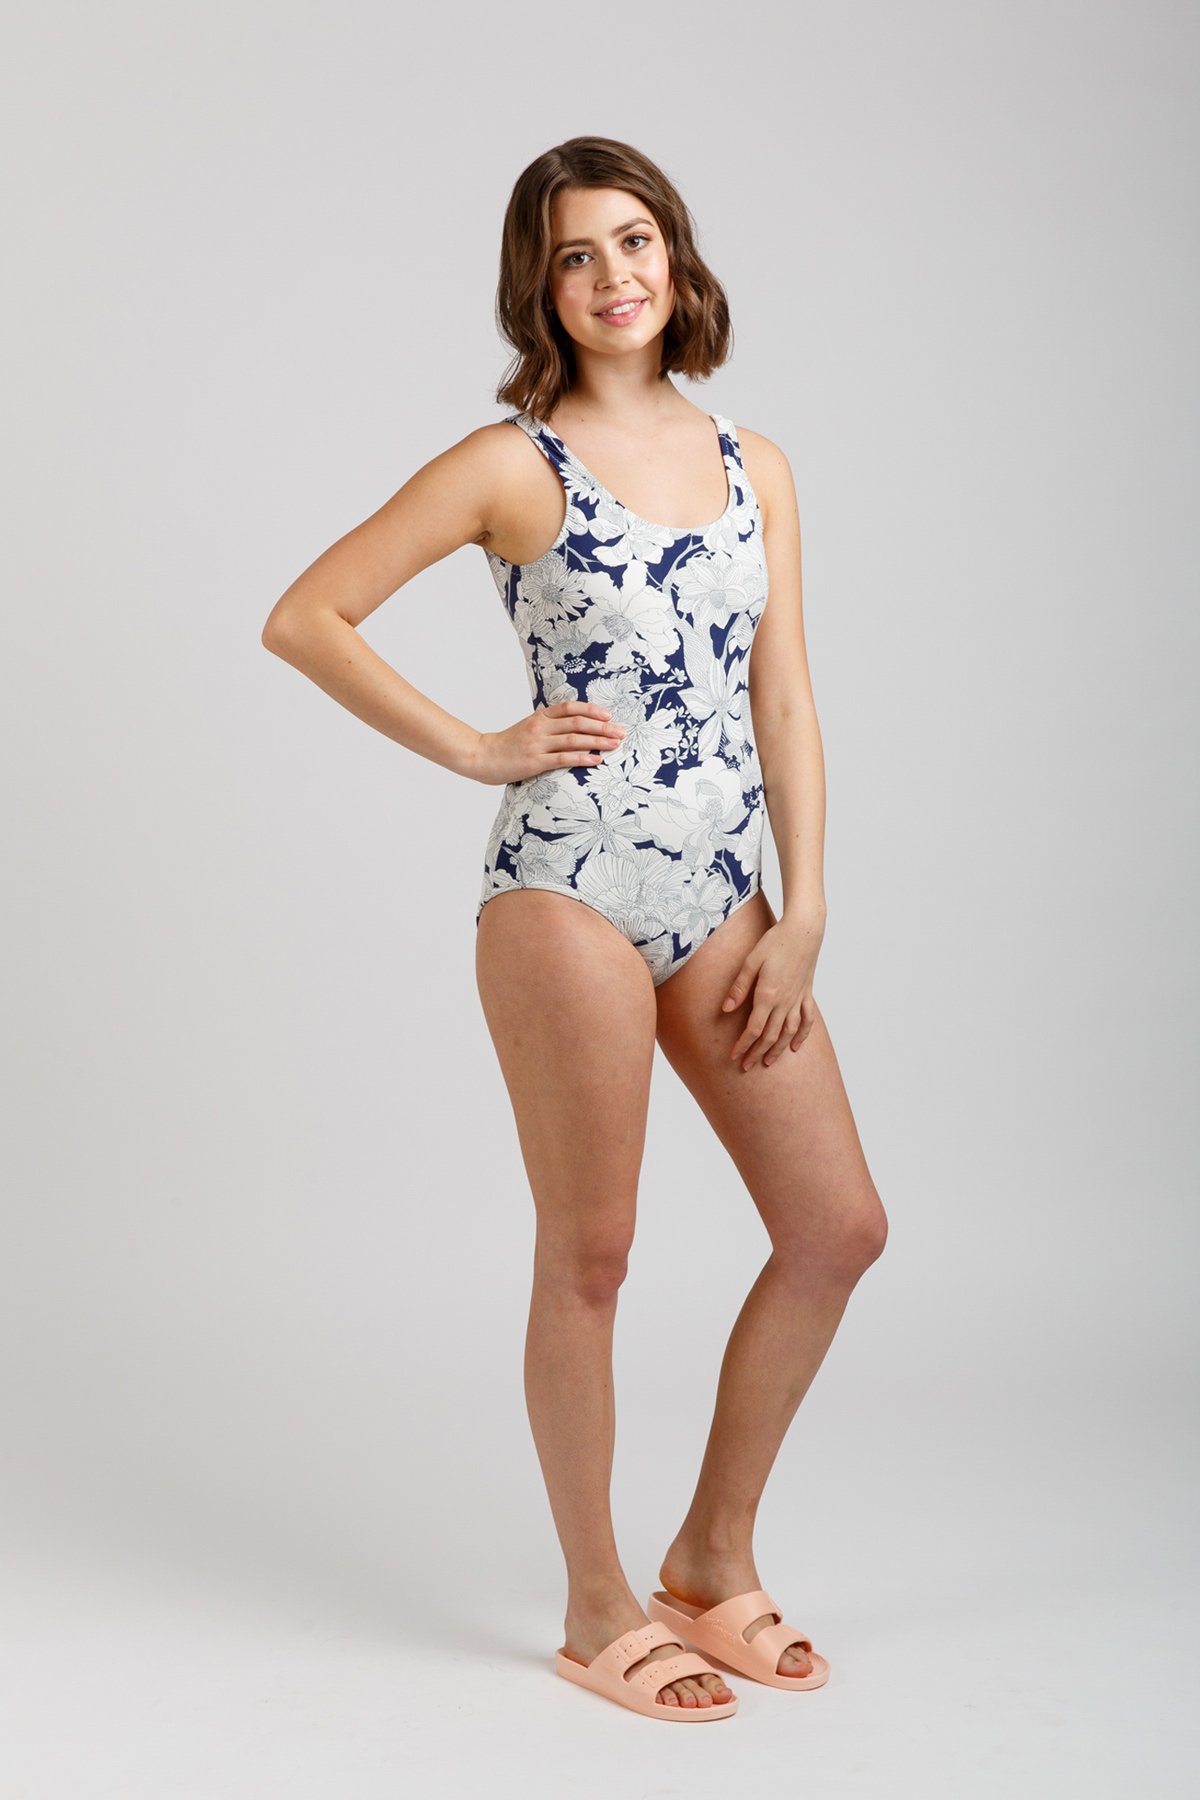 Megan Nielsen Cottesloe Swimsuit Pattern